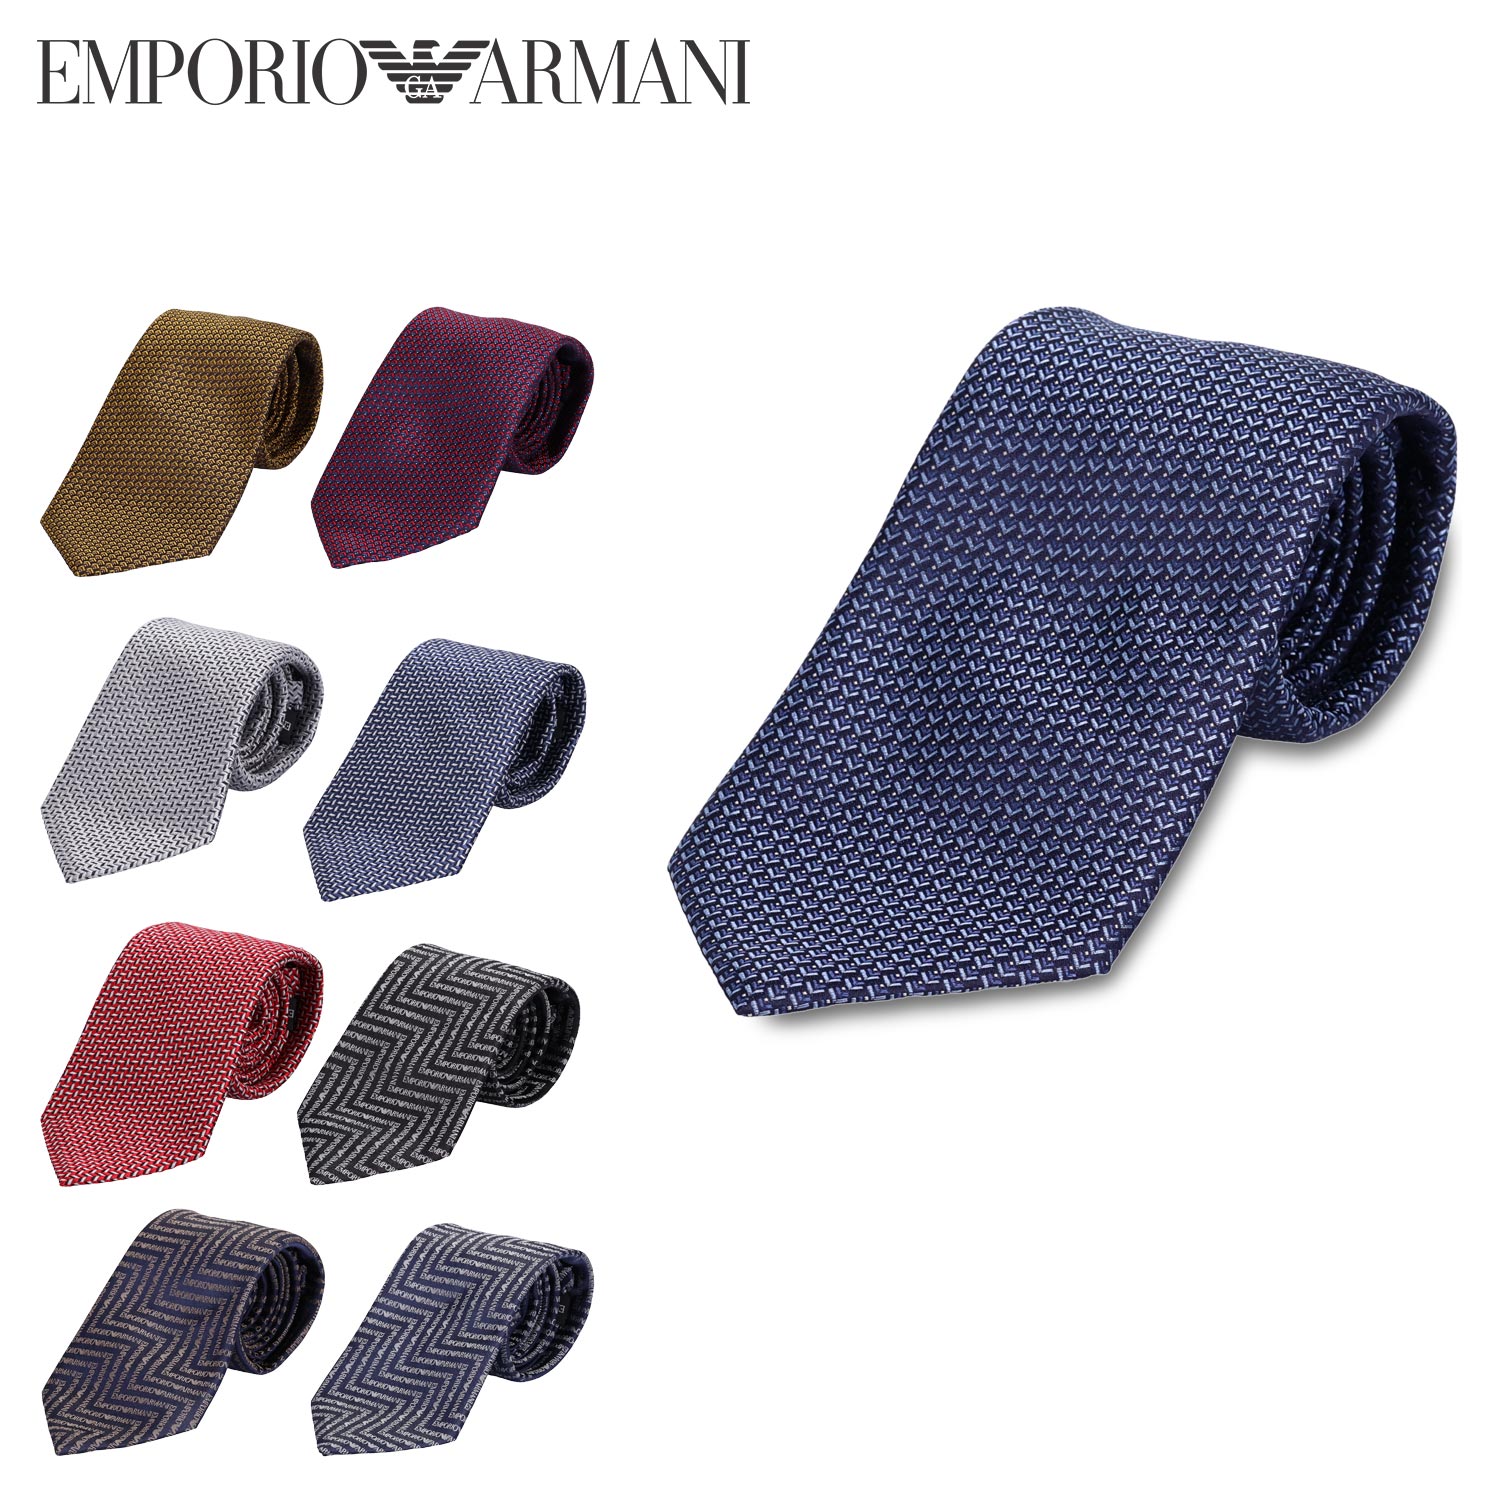 アルマーニ ネクタイ EMPORIO ARMANI NECKTIE エンポリオアルマーニ ネクタイ メンズ シルク ブランド イタリア製